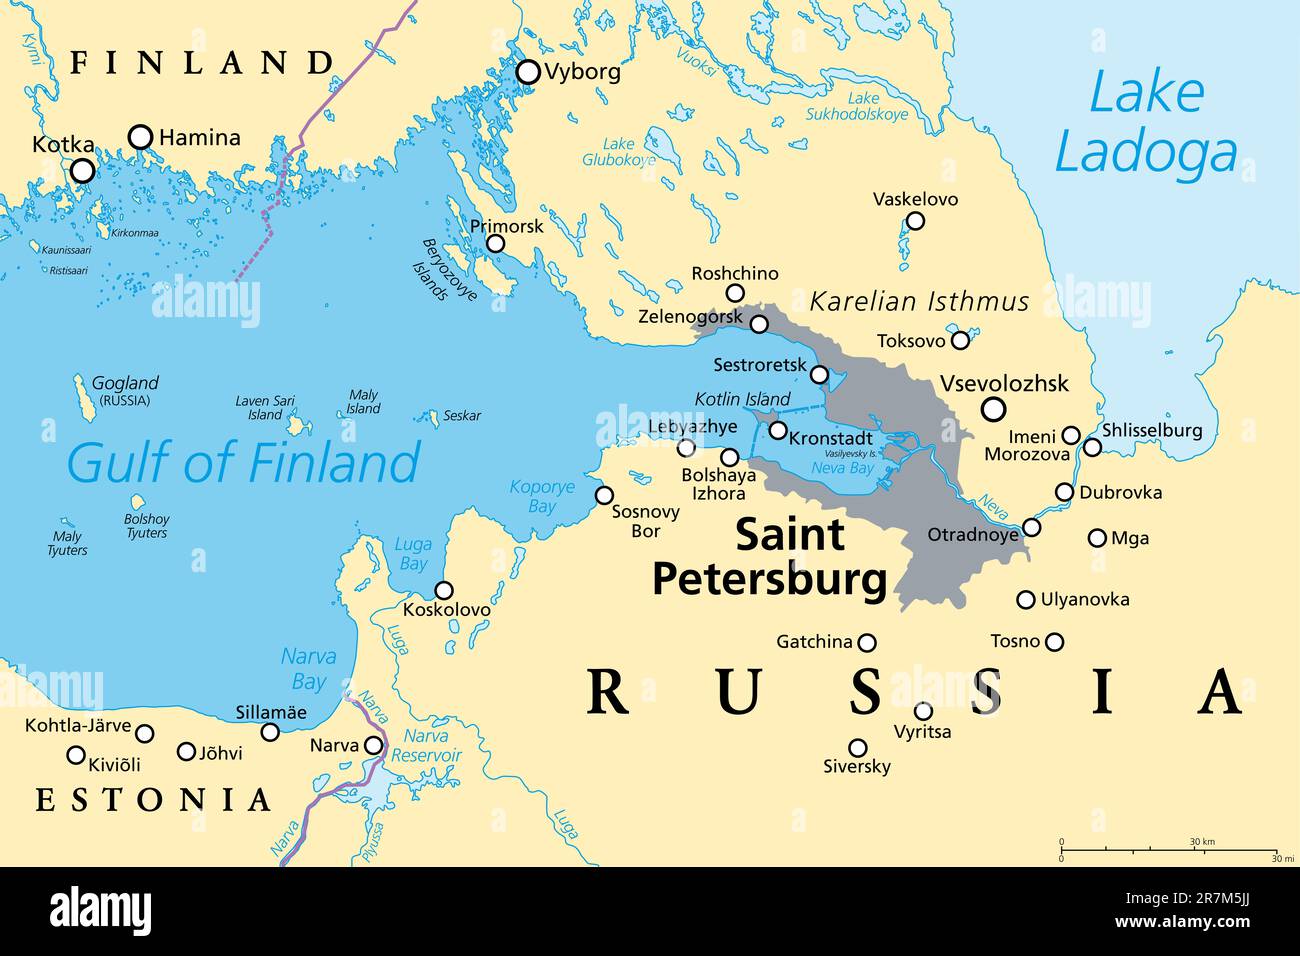 Région de Saint-Pétersbourg, carte politique. Deuxième plus grande ville de Russie, anciennement connue sous le nom de Petrograd et plus tard Leningrad. Situé sur la rivière Neva. Banque D'Images